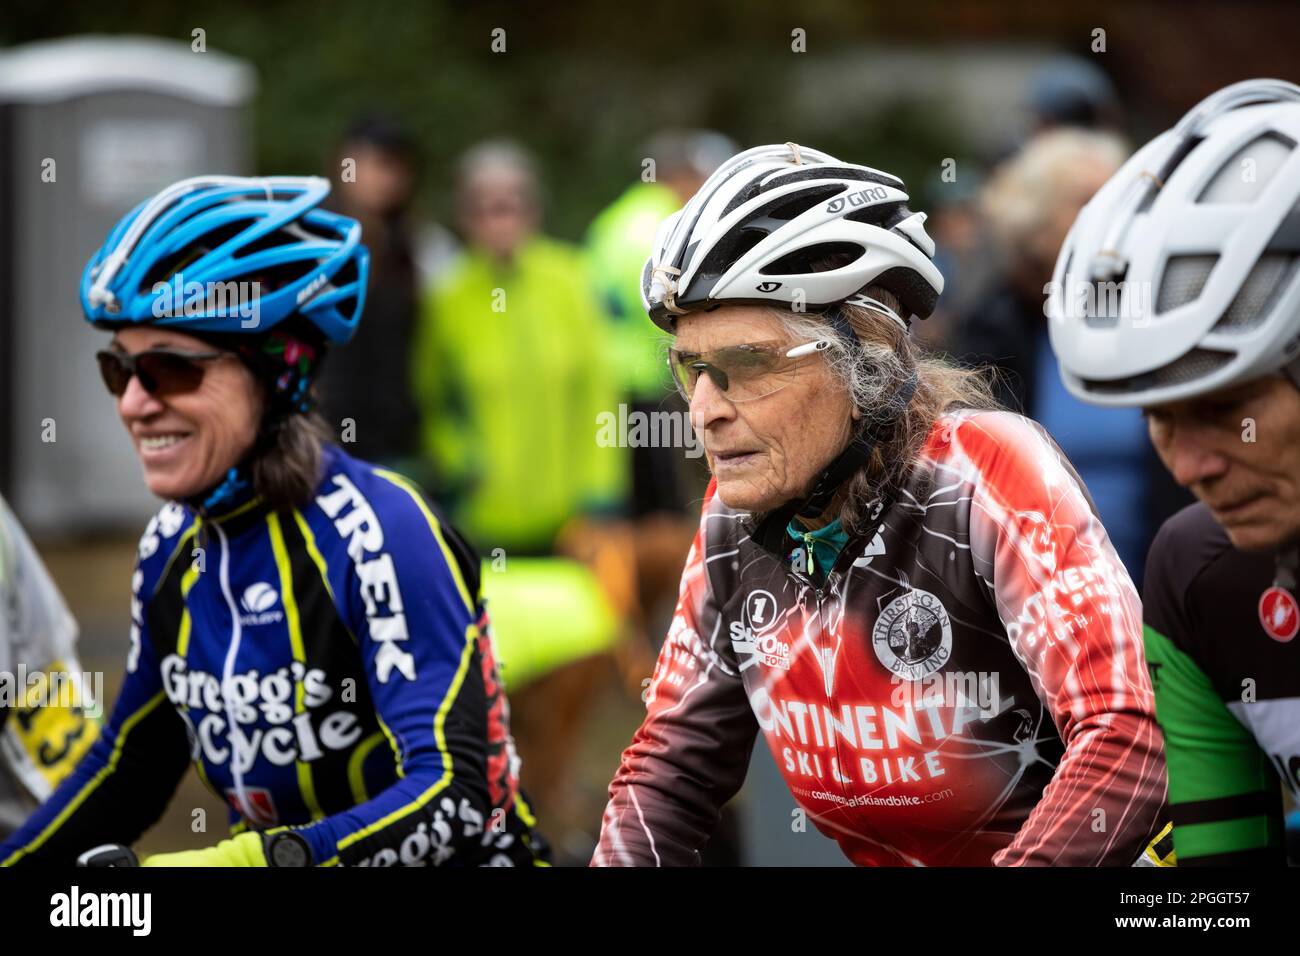 WA24073-00....Washington - Senior Citizen Vicky Spring (69) Compeating in una corsa di ciclocross nella regione occidentale di Washington. Vicky in rosso. Foto Stock